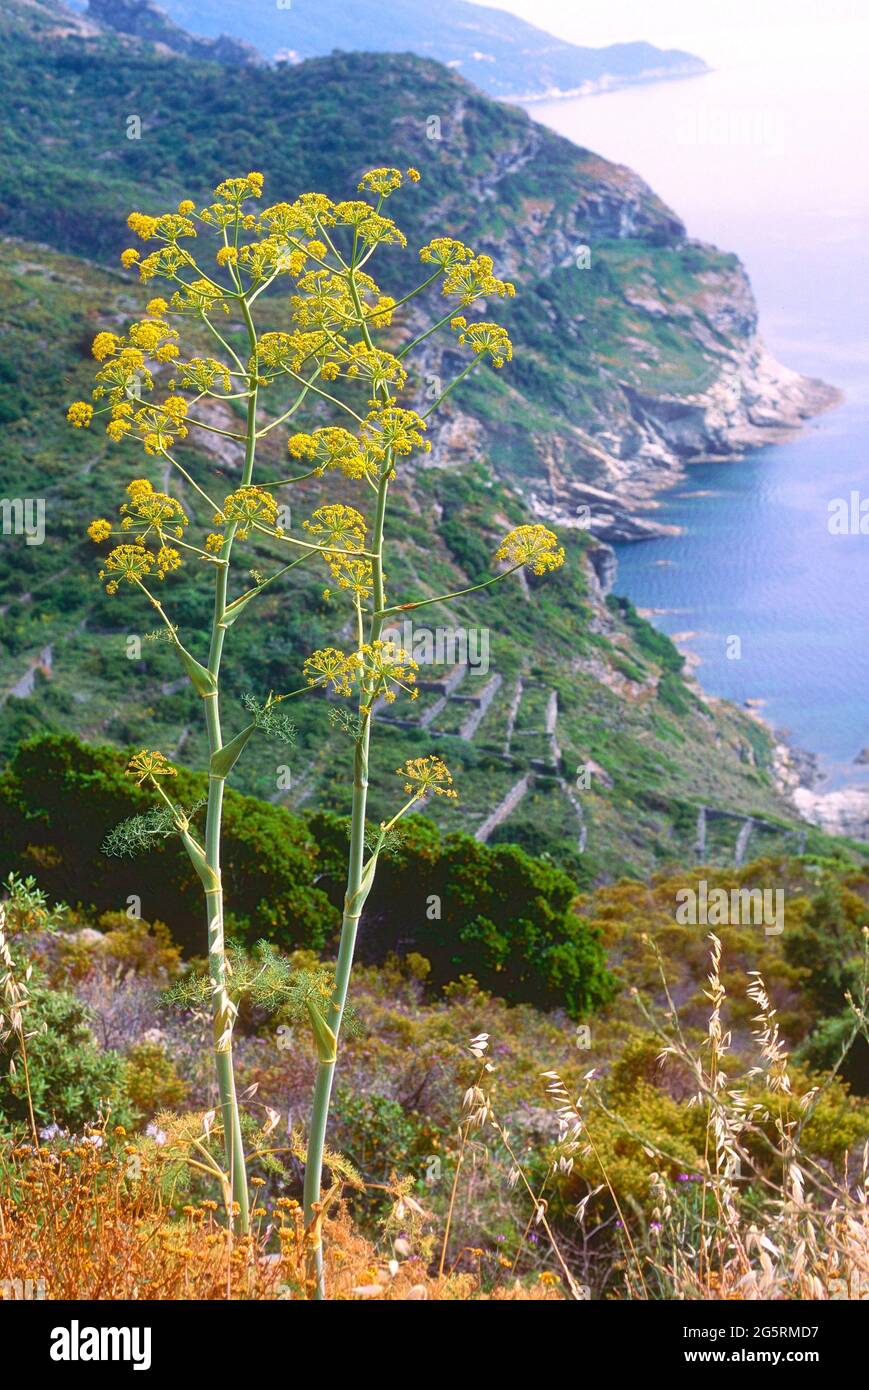 Riesenfenchel, Ferula communis, Apiaceae, blühend, Blume, Pflanze, Mittelmeerküste, Spanien Stock Photo